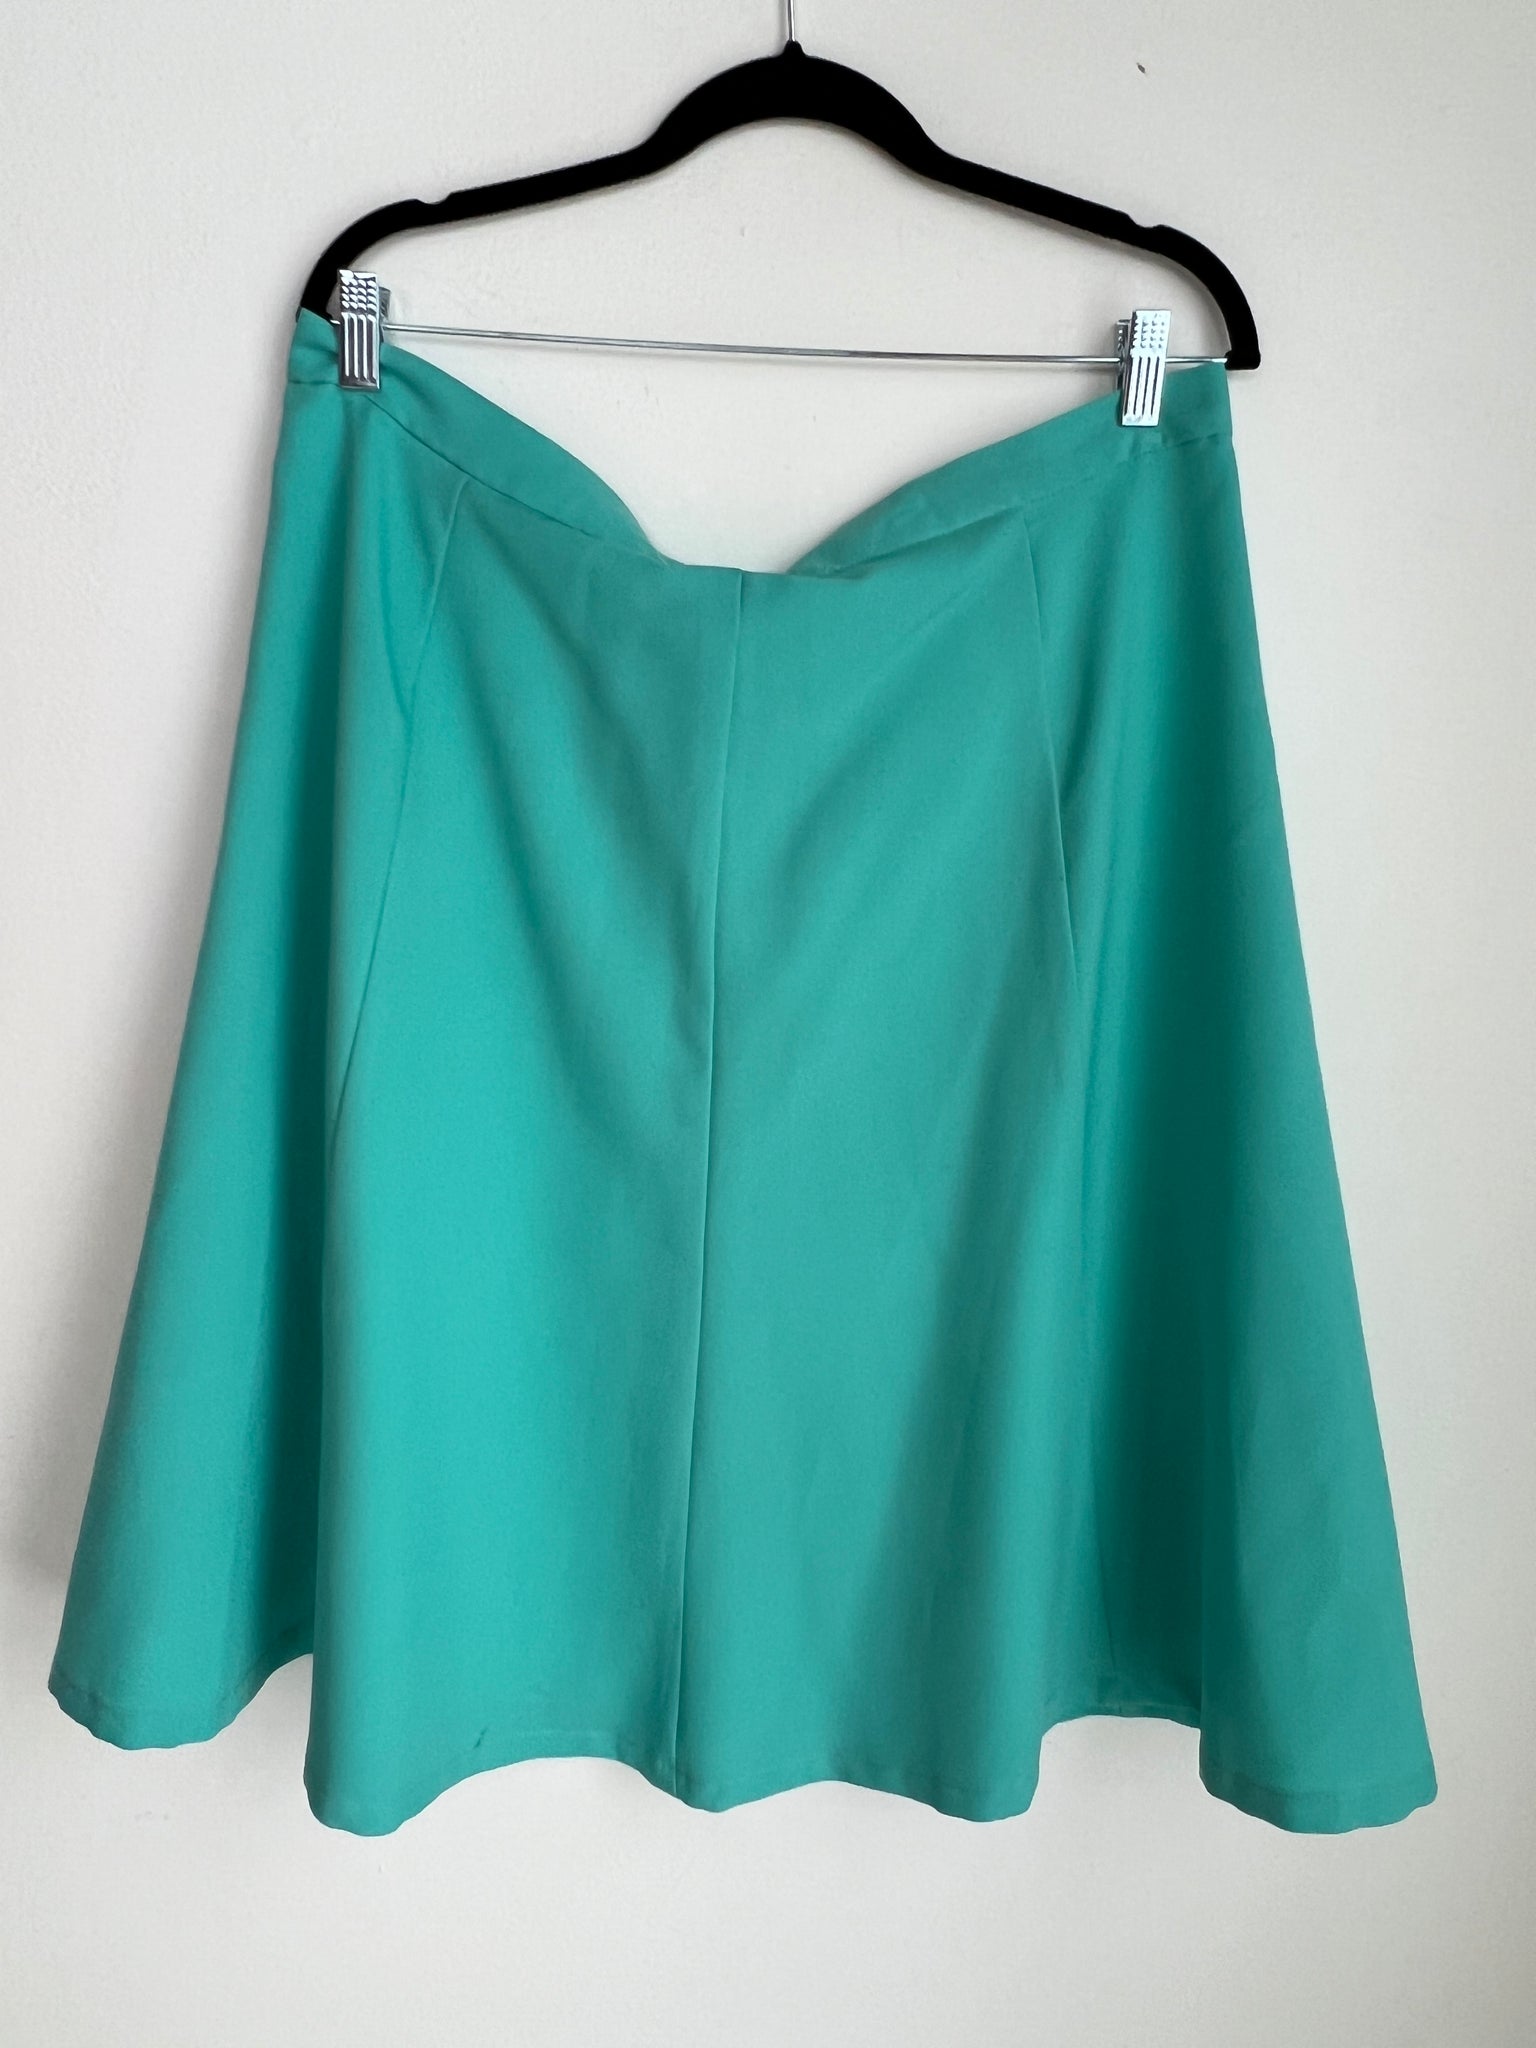 1970s SKIRT- teal full skirt